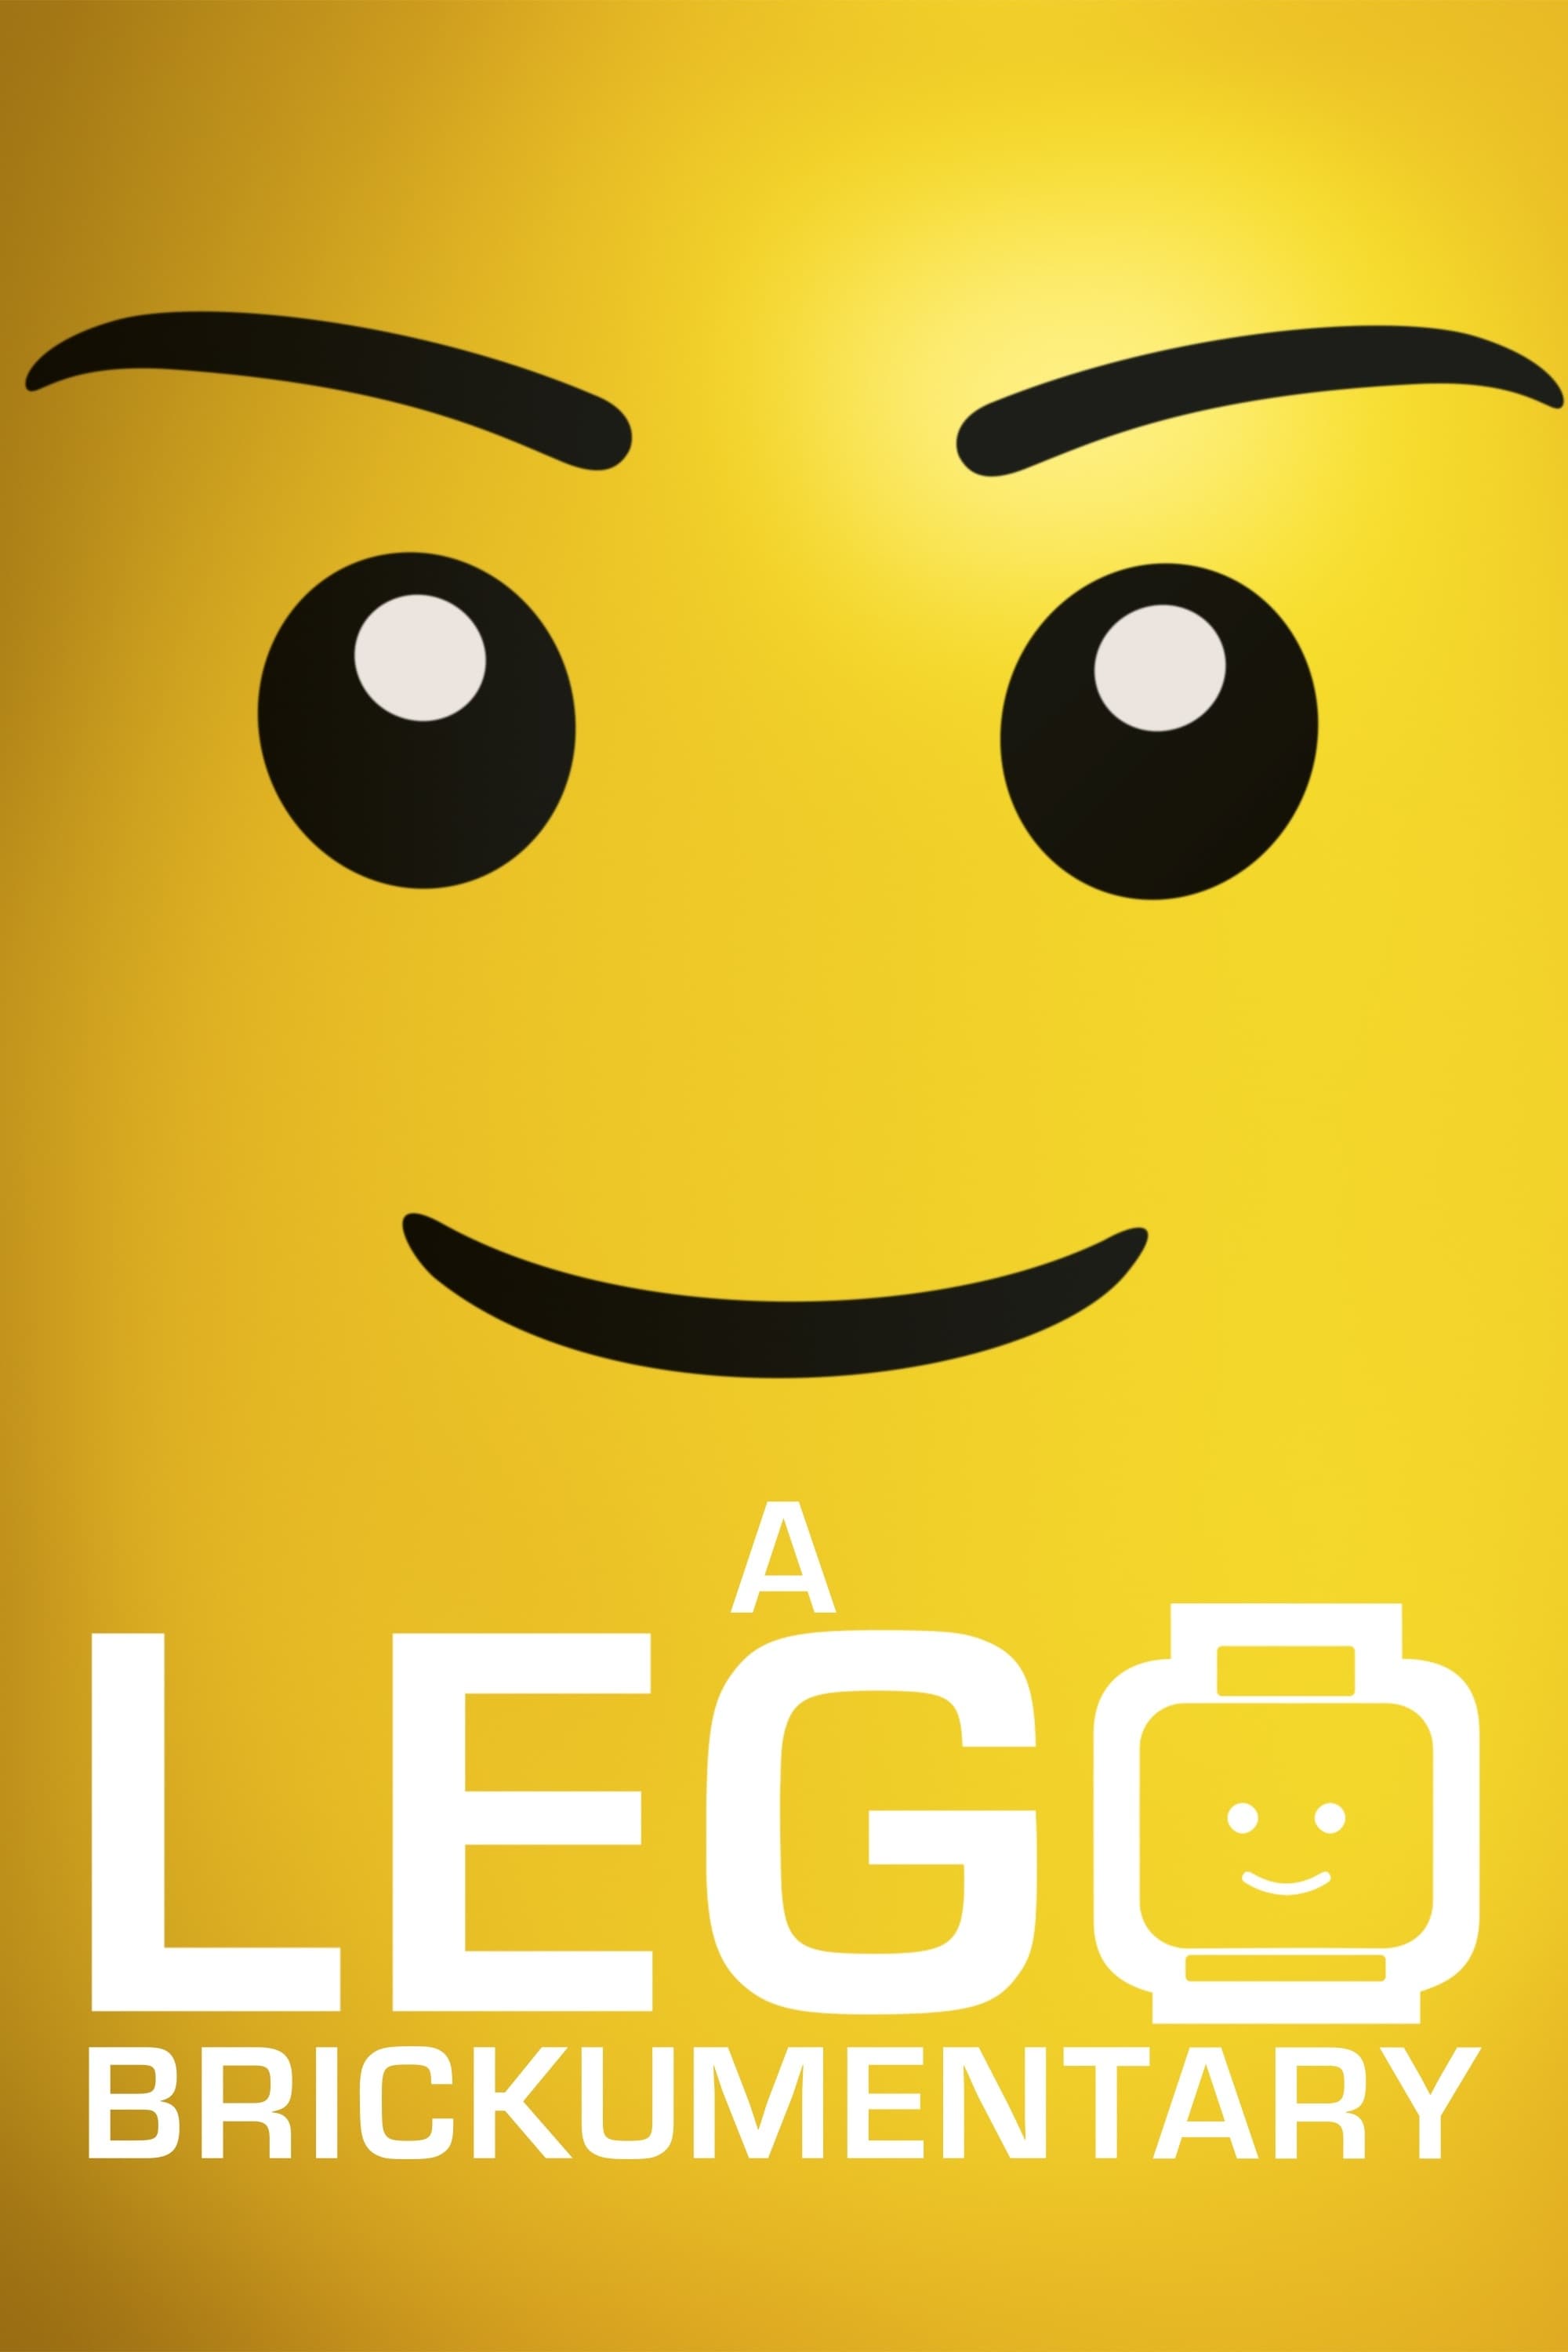 Bir Lego Belgeseli